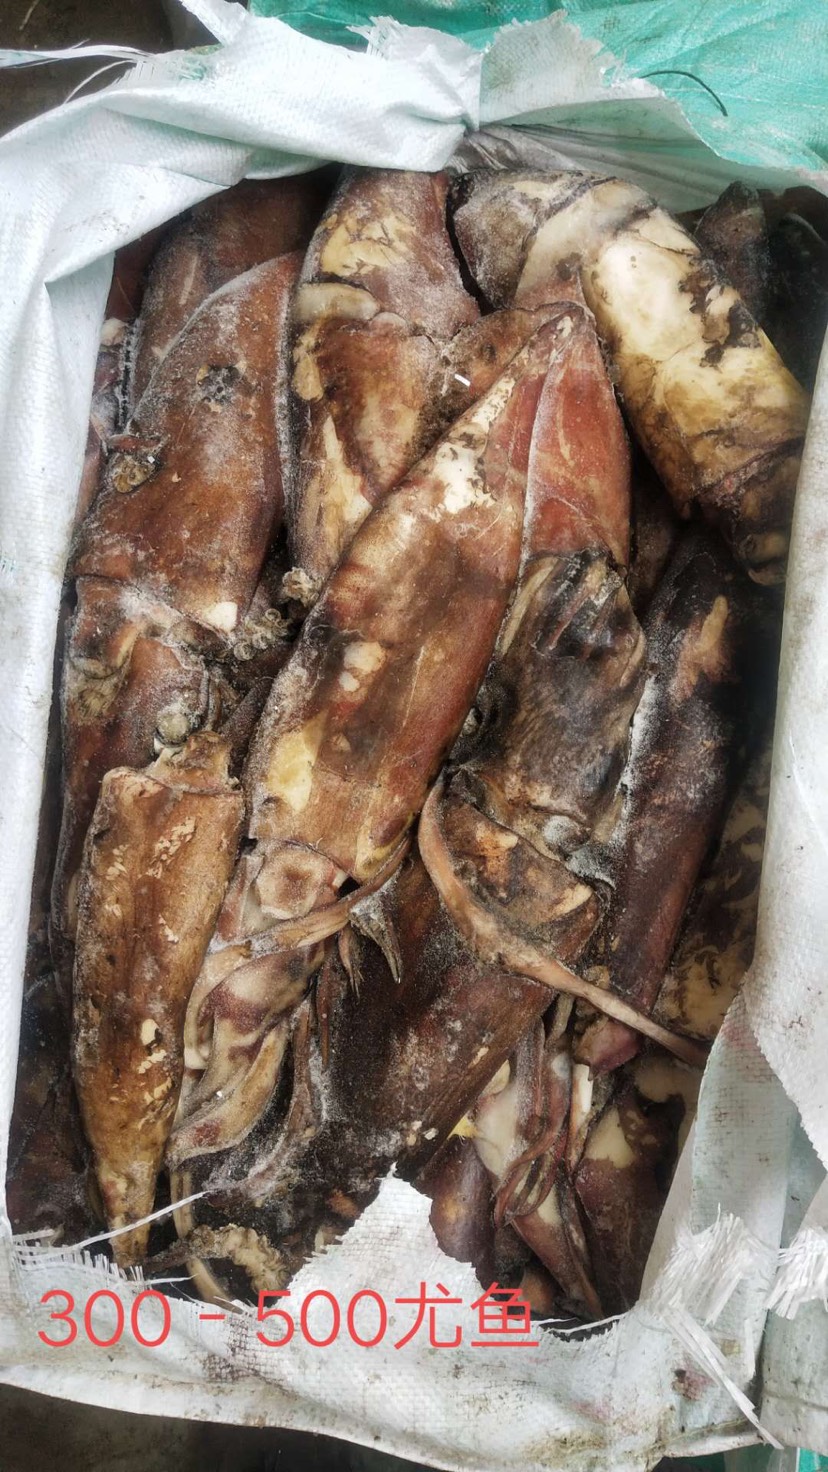 印尼鱿鱼和国内鱿鱼图片